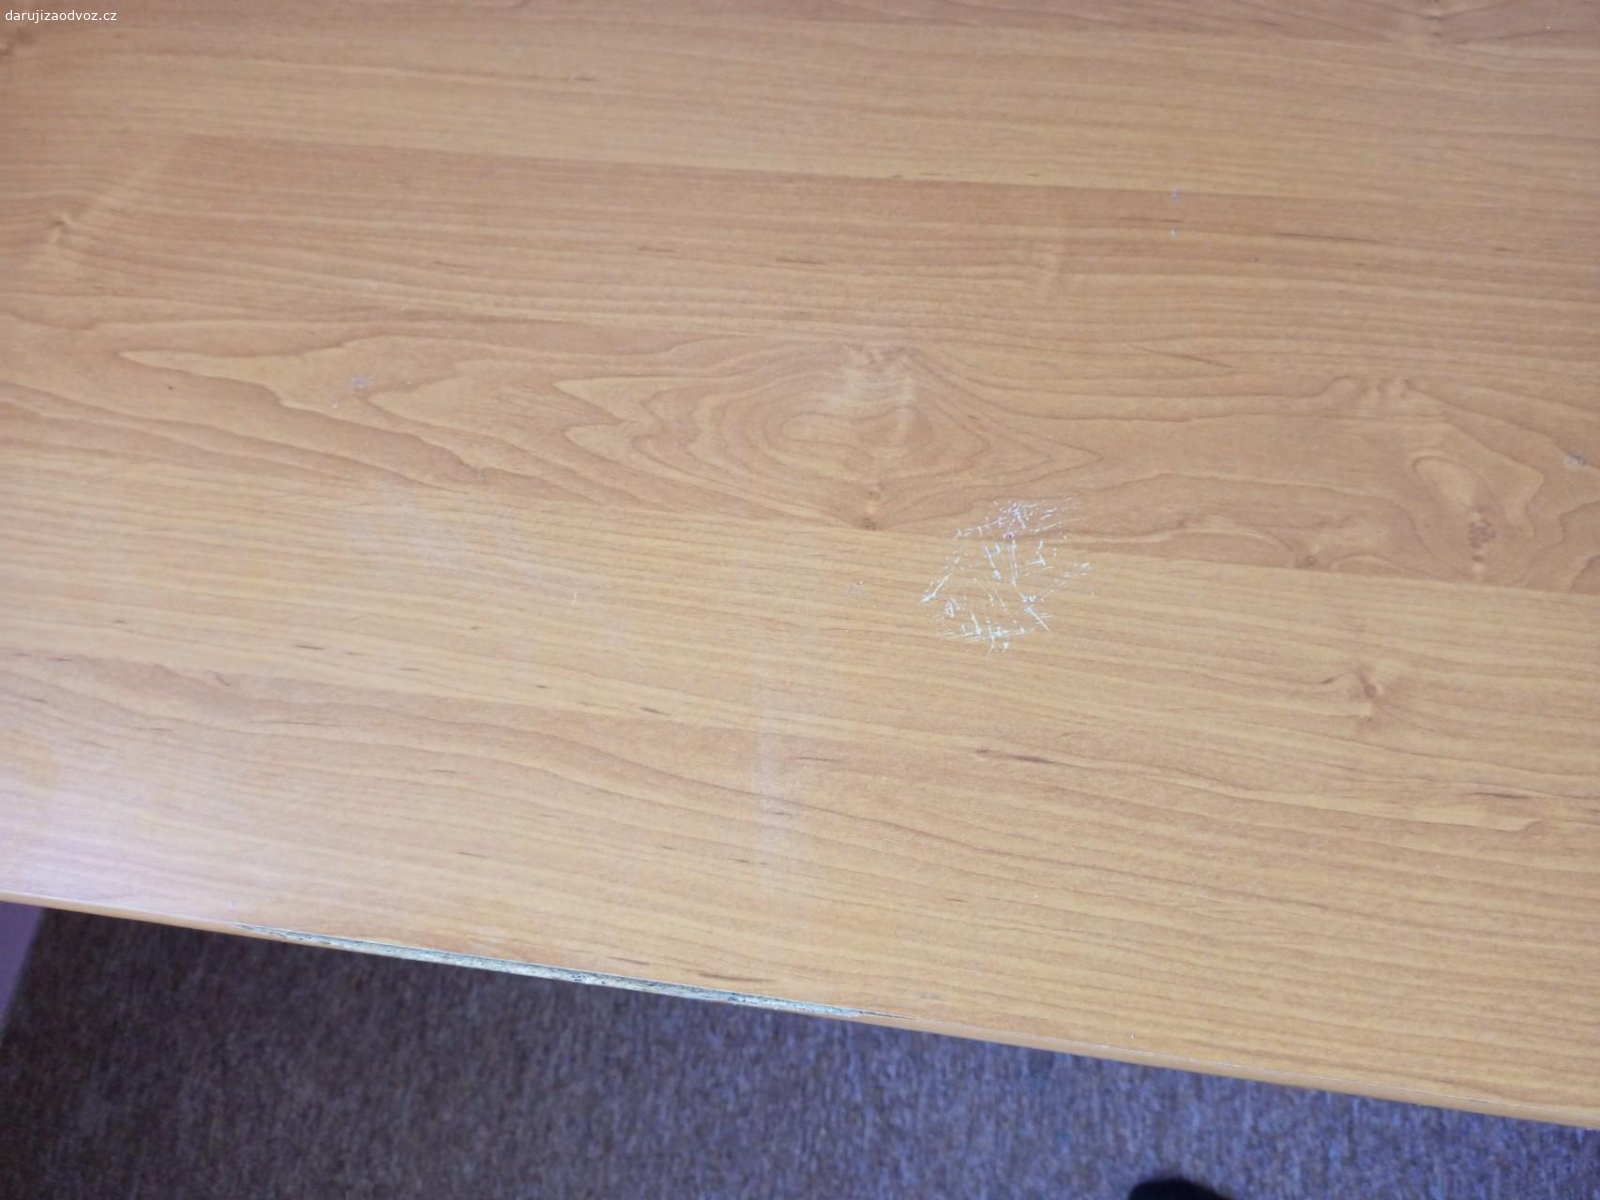 Psací stůl. Dám za odvoz psací stůl 125 x 73 cm.
Poškození na hraně stolu, viz. foto.
Stůl může být i otočený.
Trochu poškrábaná deska, viz.foto.